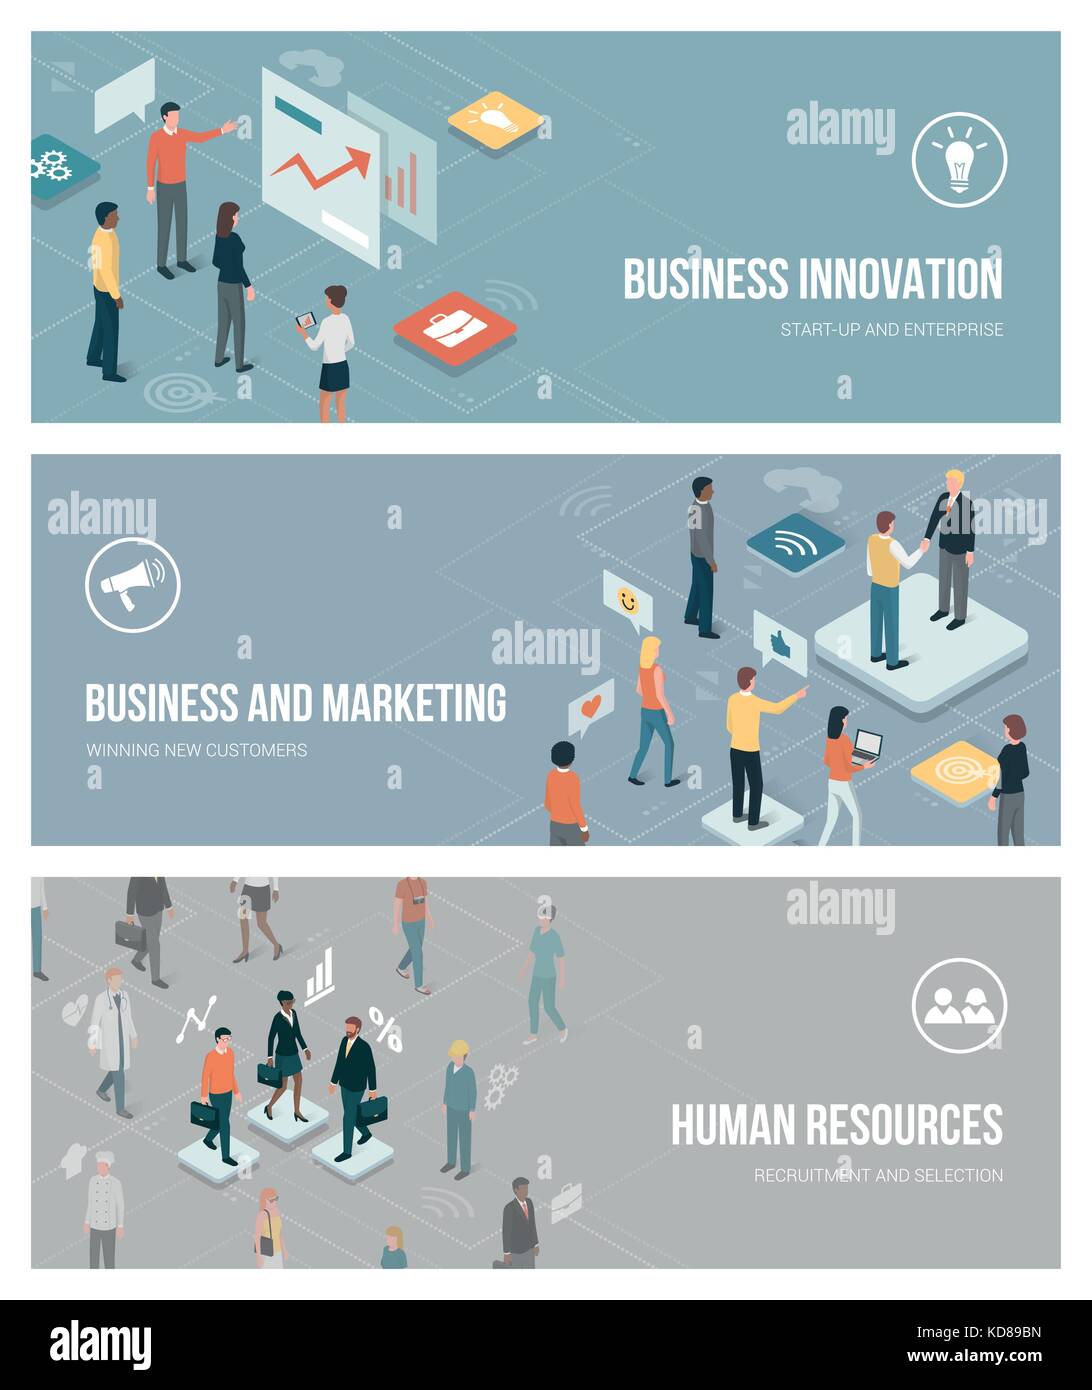 Business Innovation, Marketing und Human Resources Banner mit isometrischen Zeichen und app-Tasten einstellen Stock Vektor